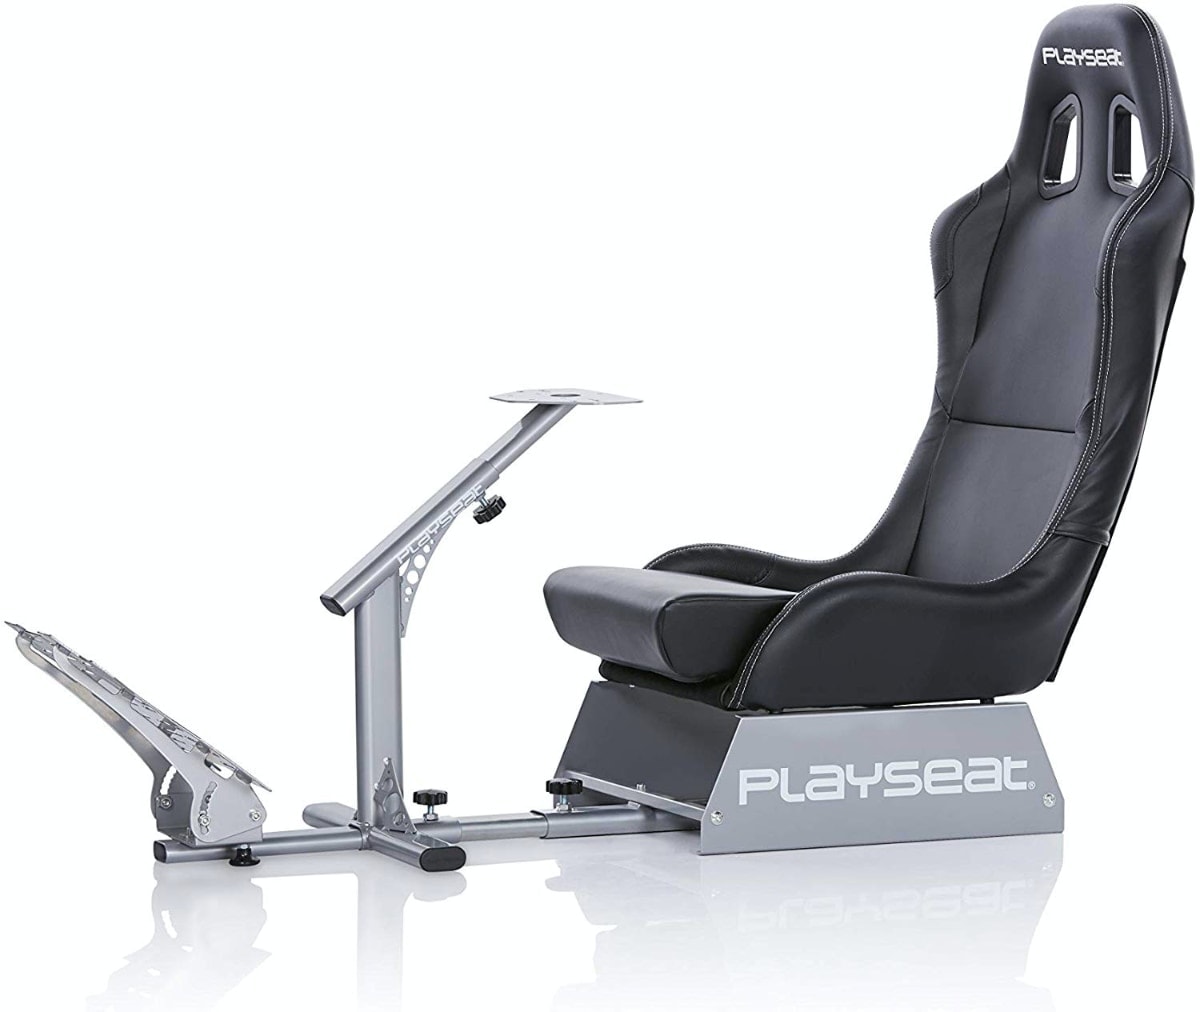 Asiento Blade - Playseat Evolution New para estar más cómodo y poner tu volante. 